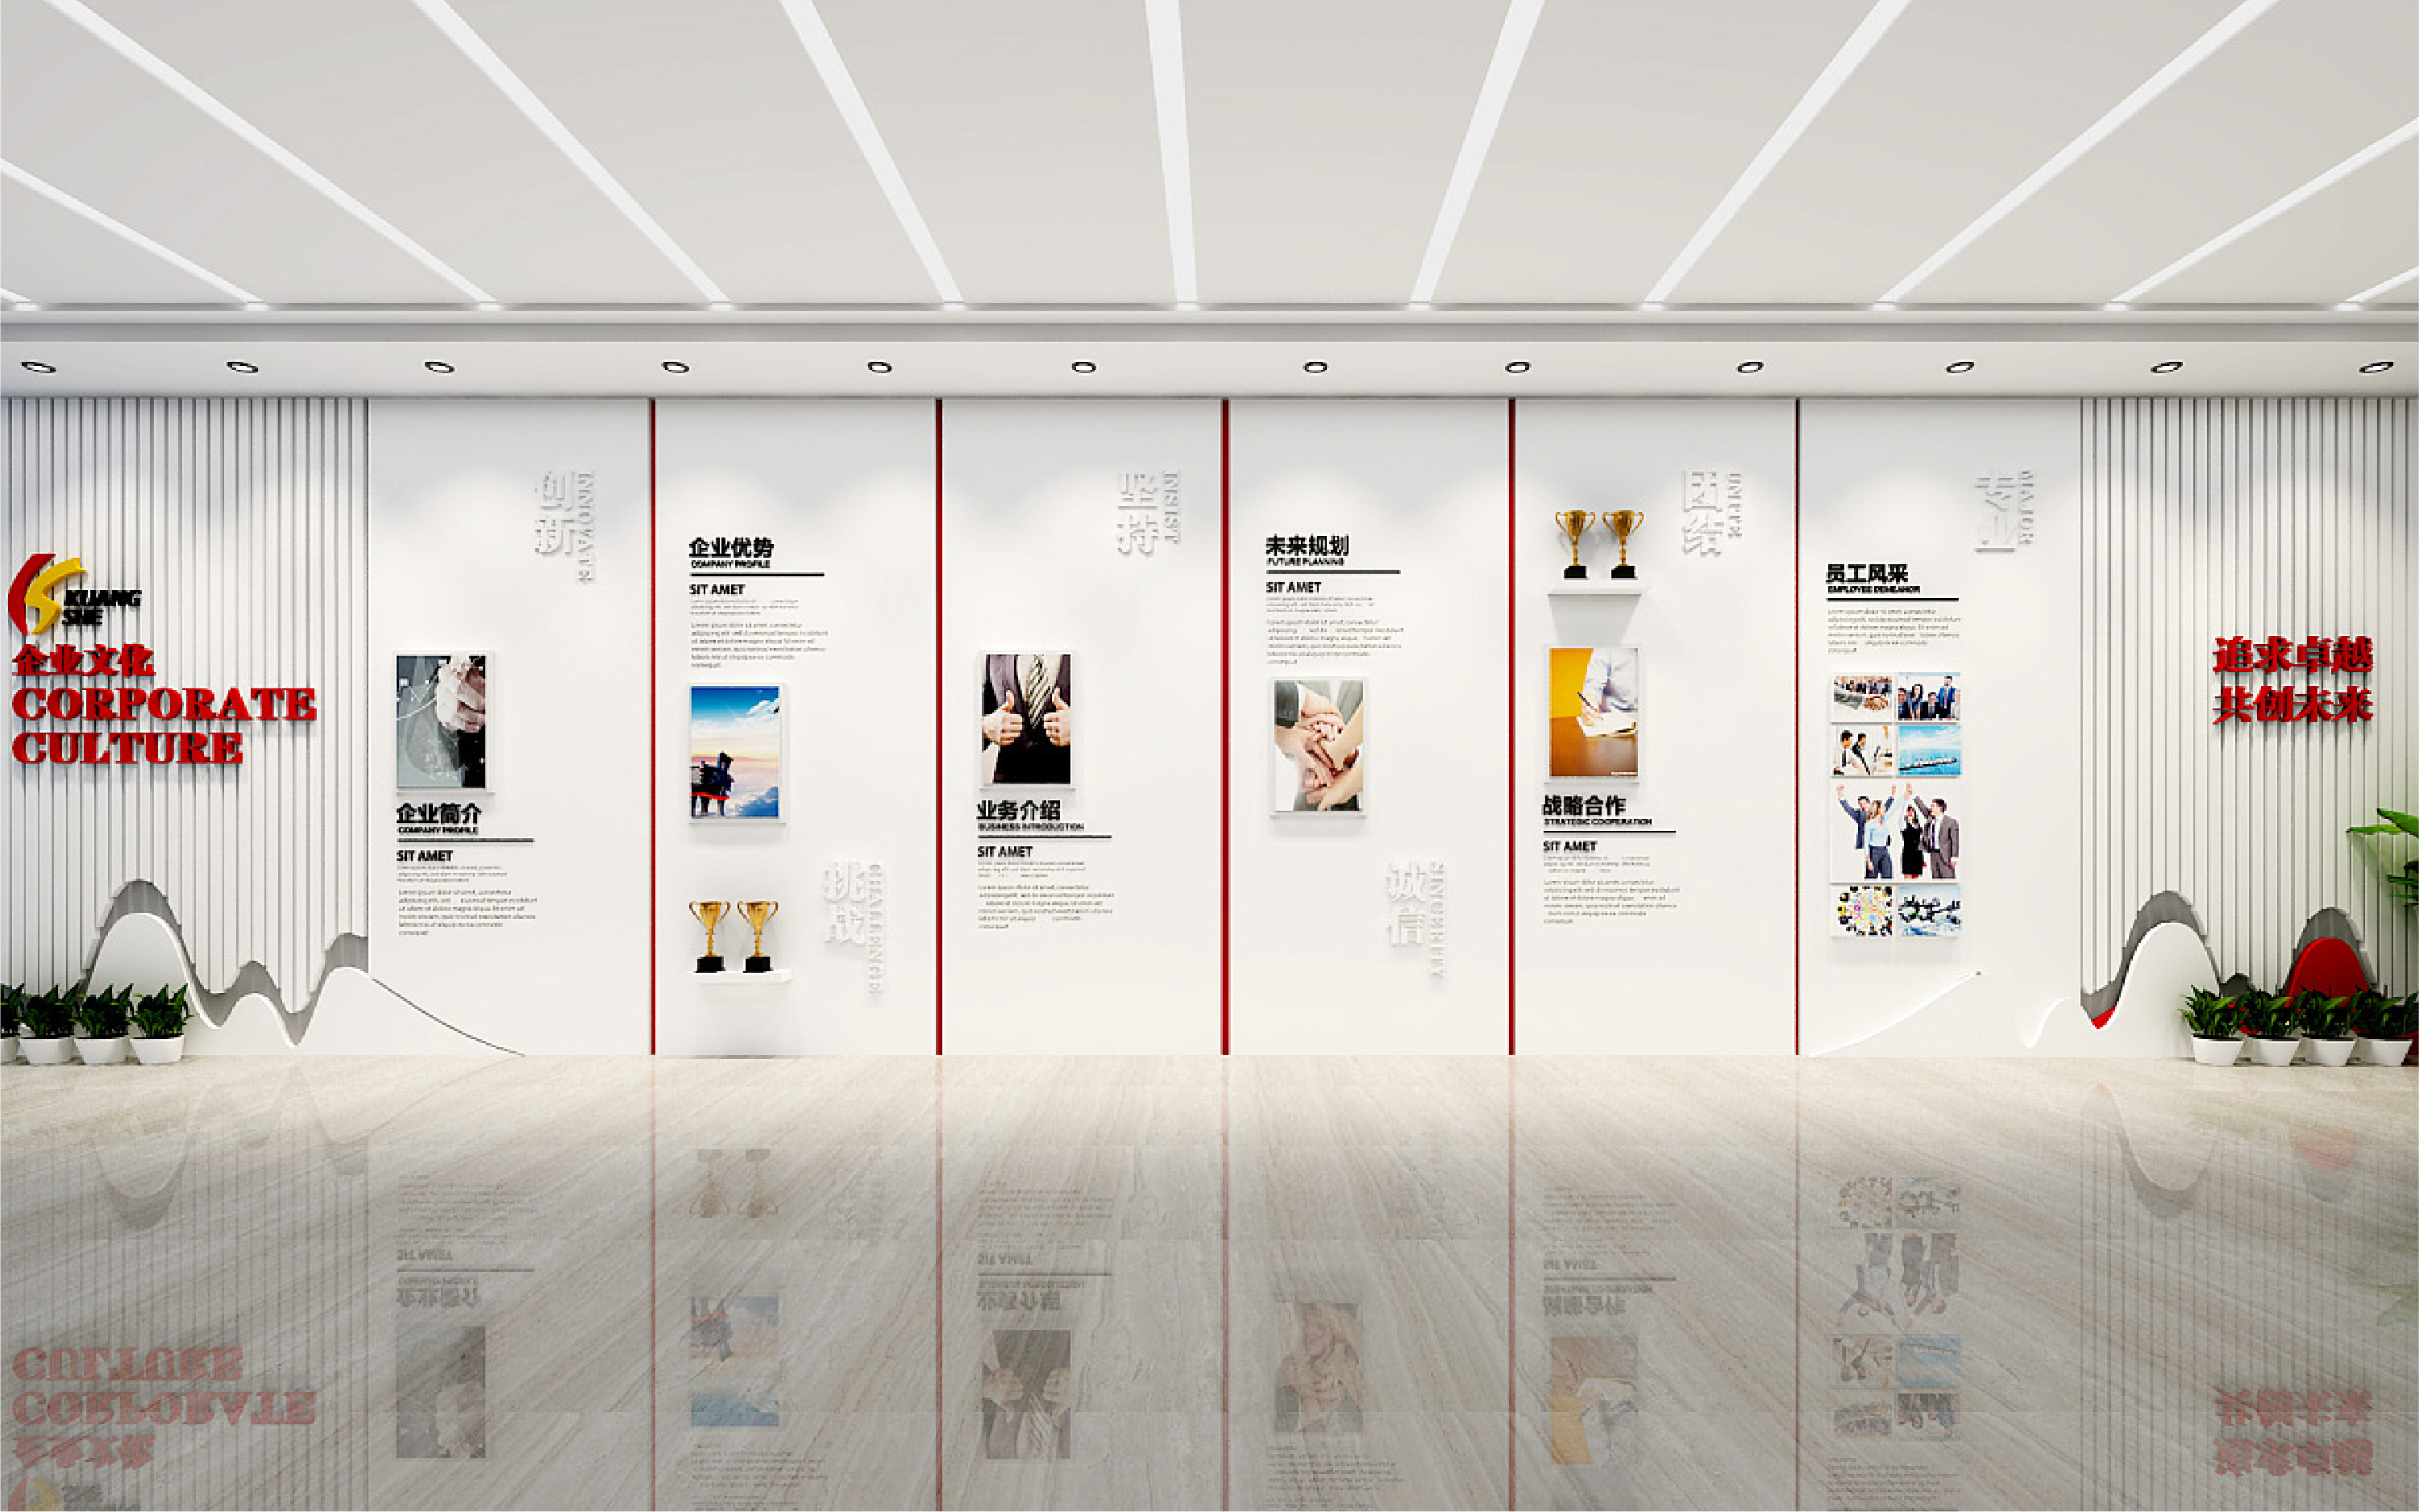 展台设计橱窗展厅设计公司企业文化墙设计墙面平面广告设计宣传栏